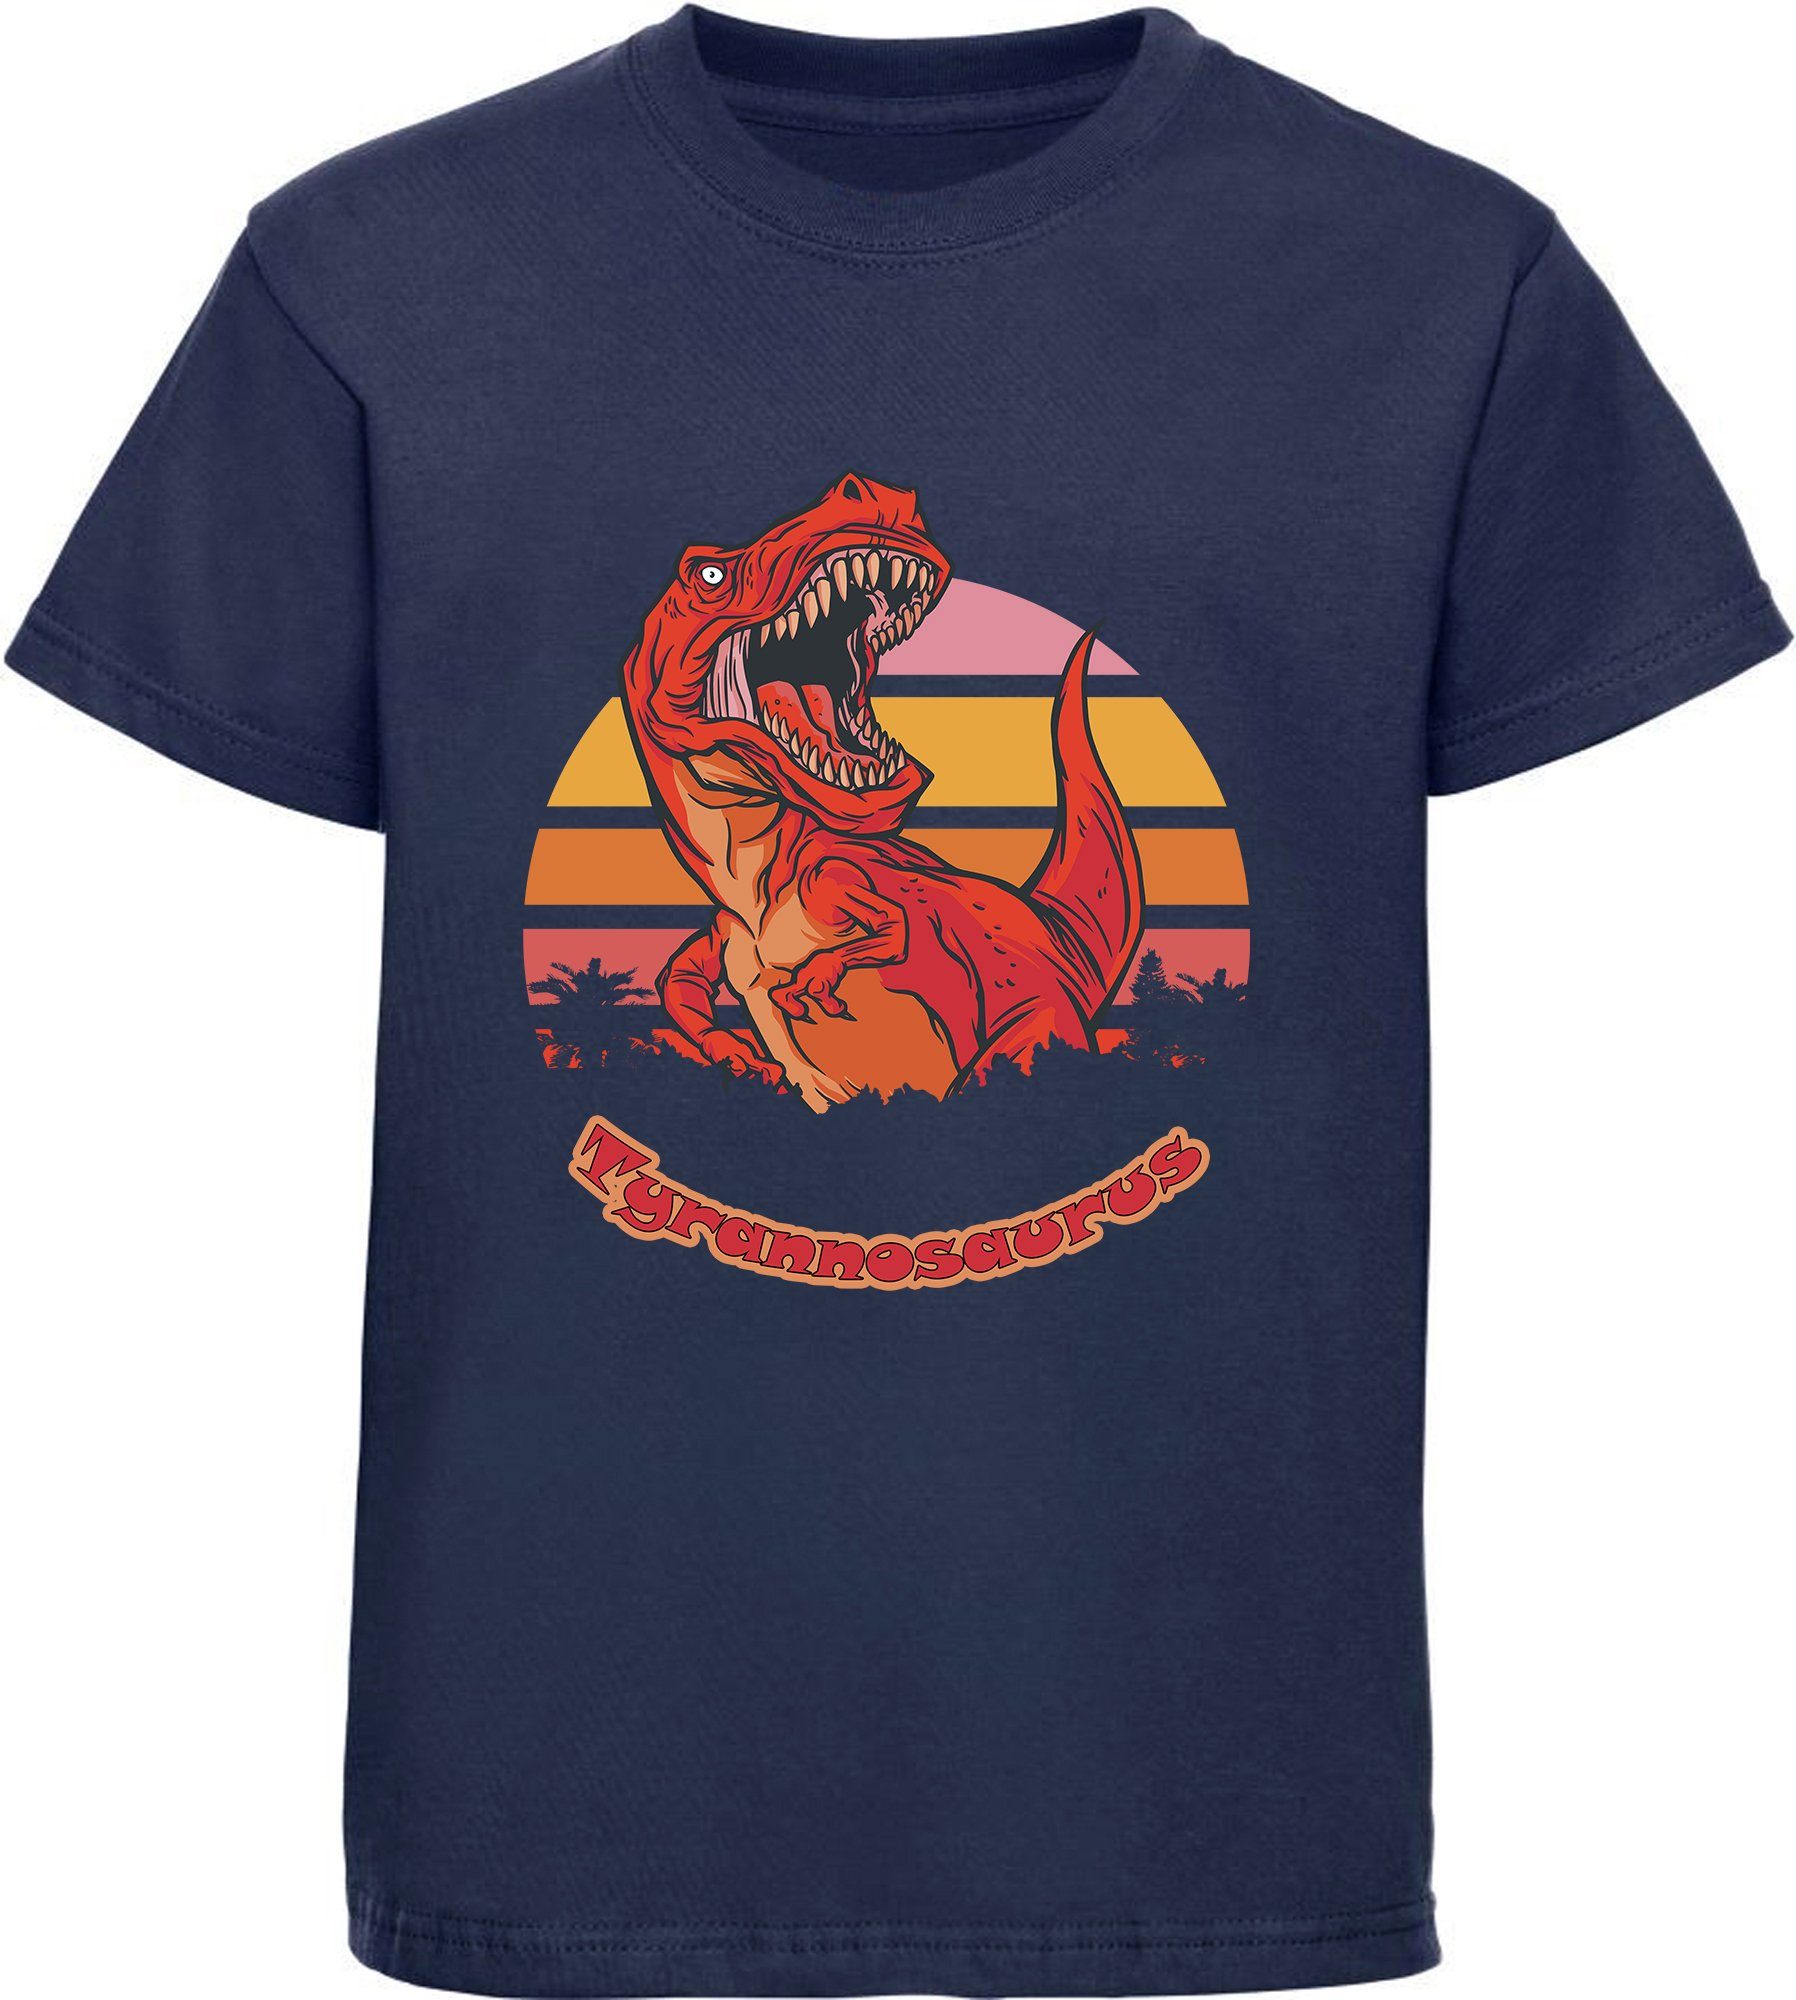 MyDesign24 Print-Shirt bedrucktes Kinder T-Shirt mit roten brüllendem T-Rex Baumwollshirt mit Dino, schwarz, weiß, rot, blau, i100 navy blau